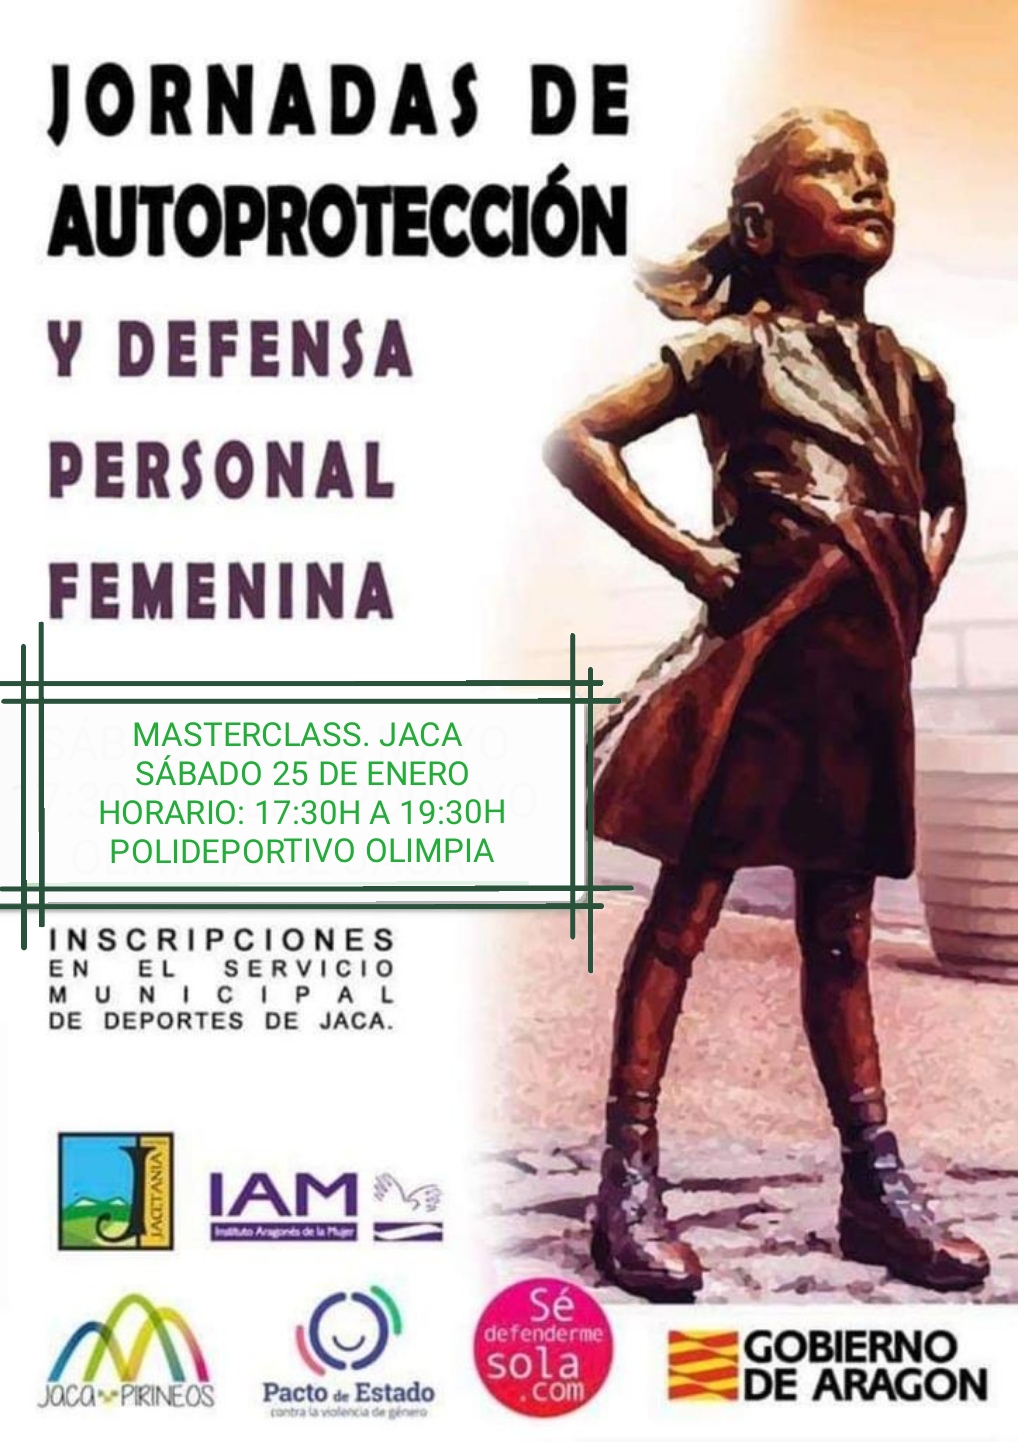 Jornadas de Autoprotección y Defensa Personal Femenina. Masterclass